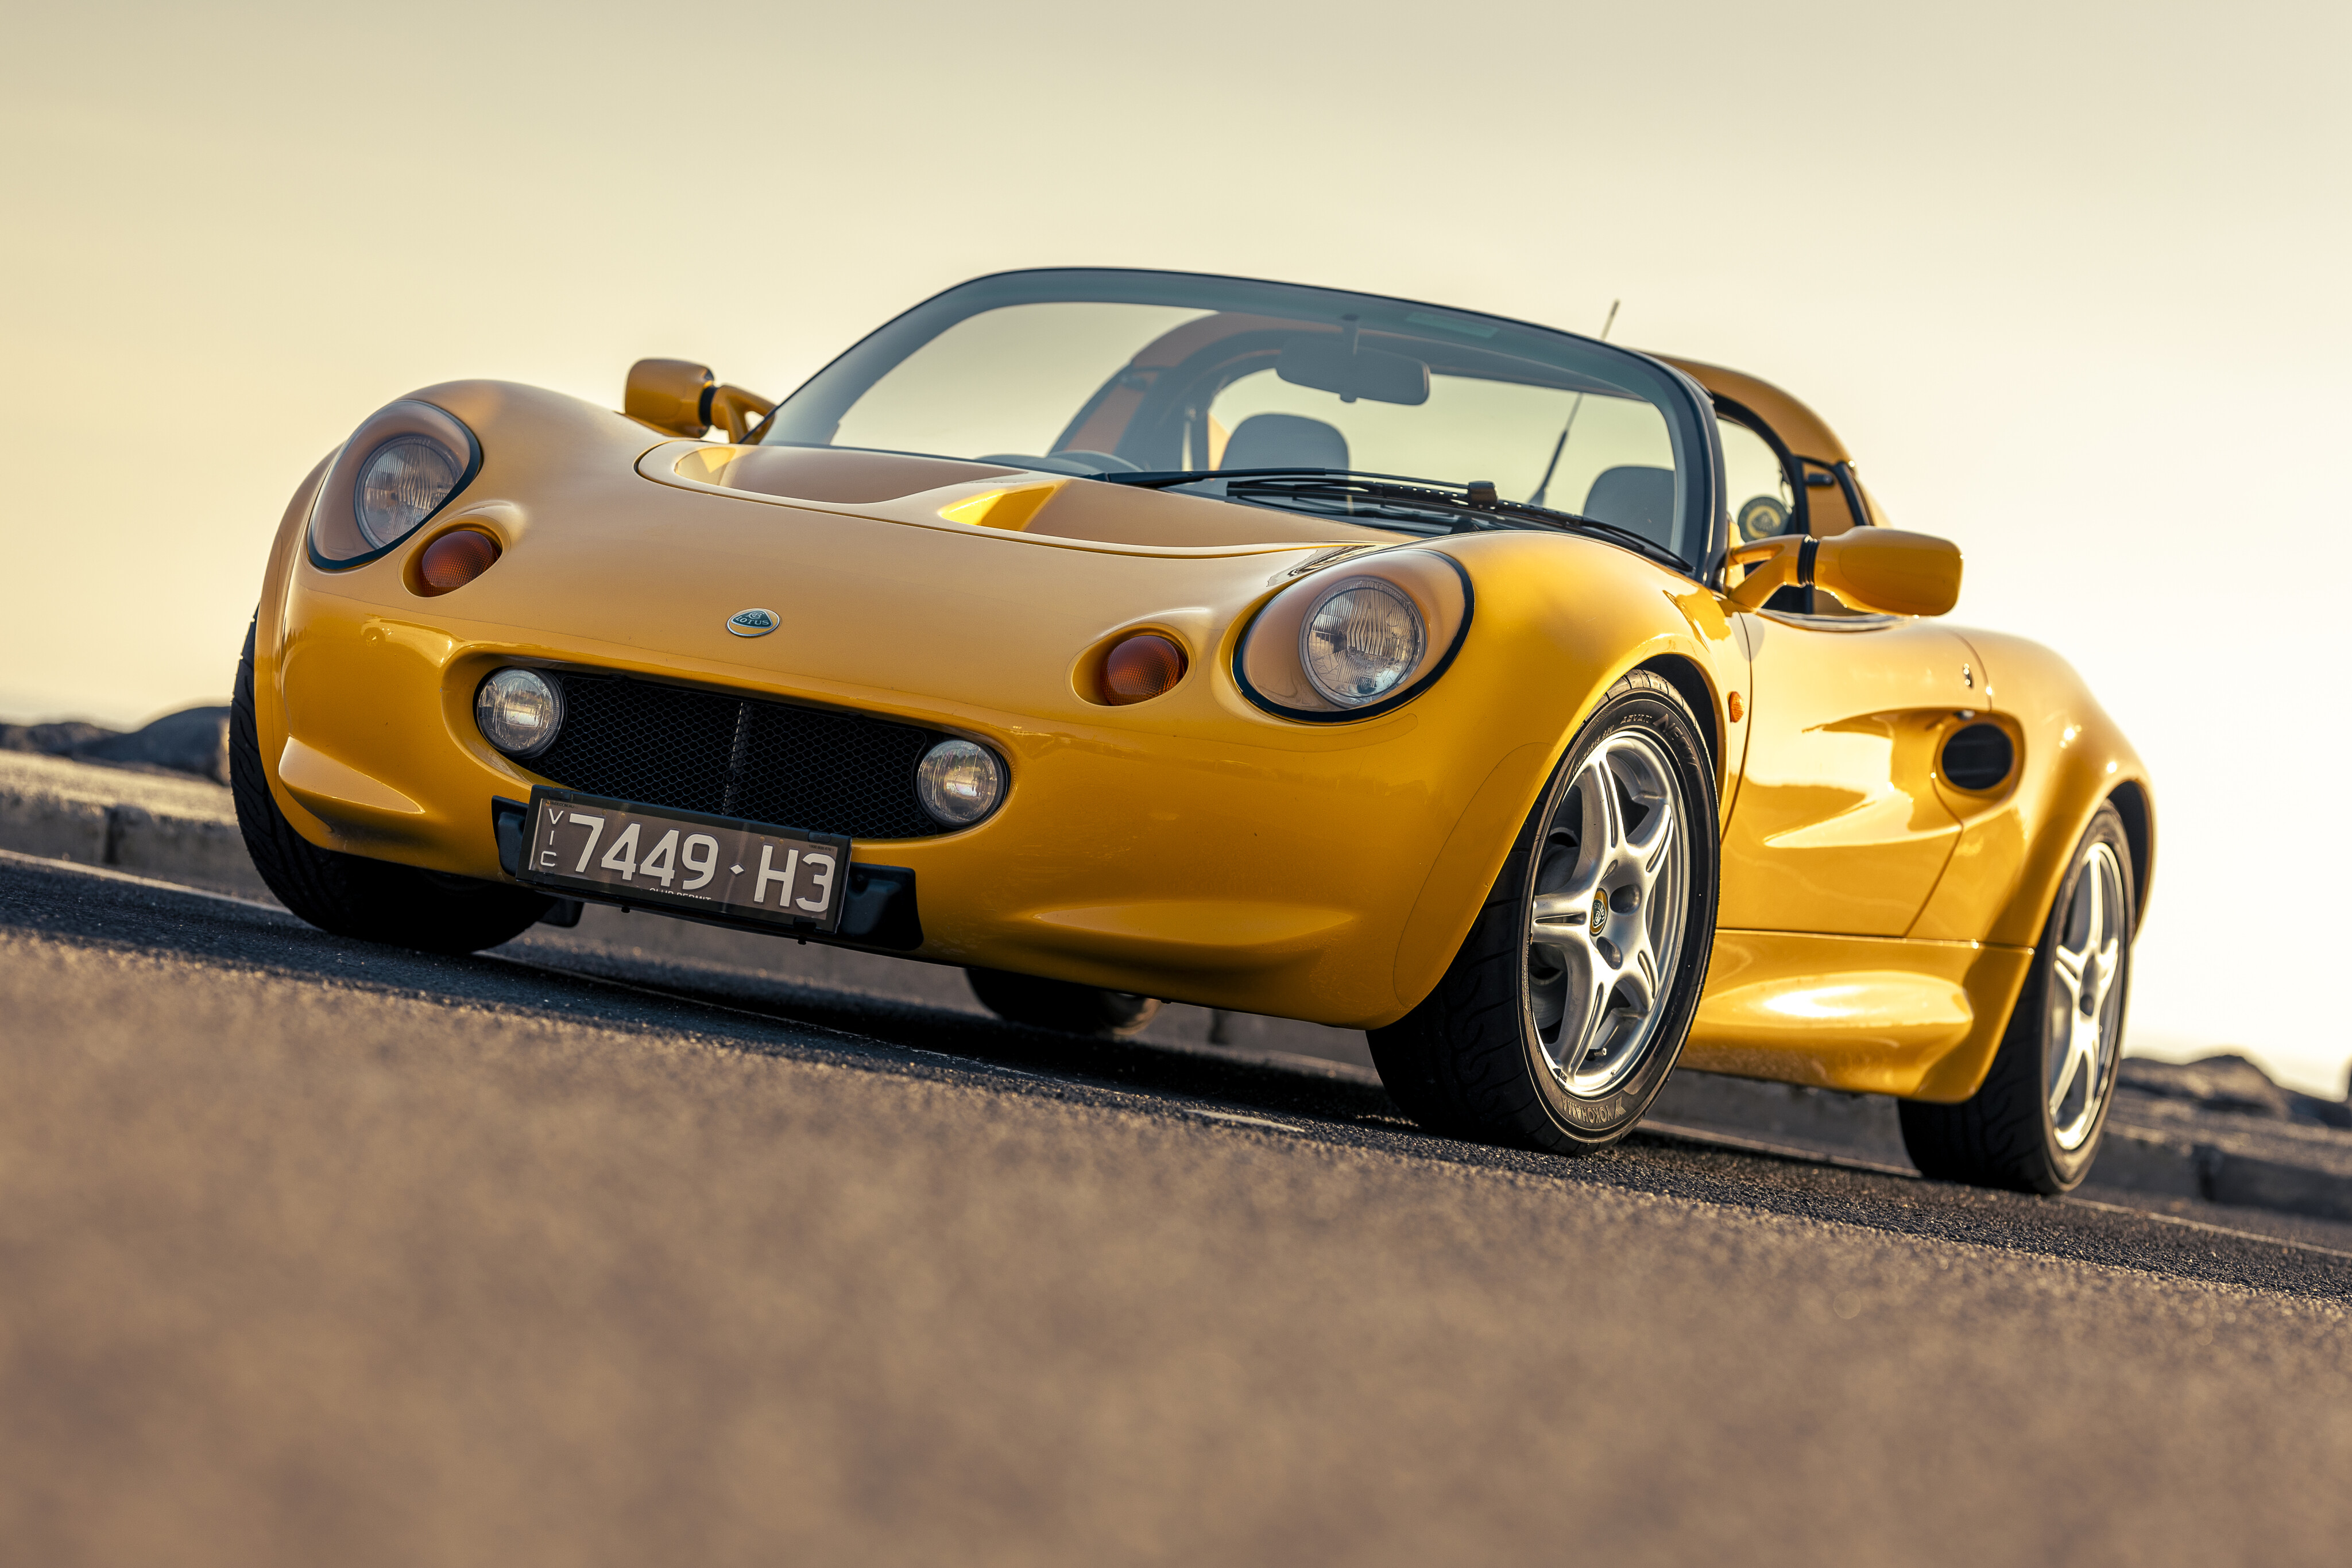 Lotus Elise - Iconic Sports Car